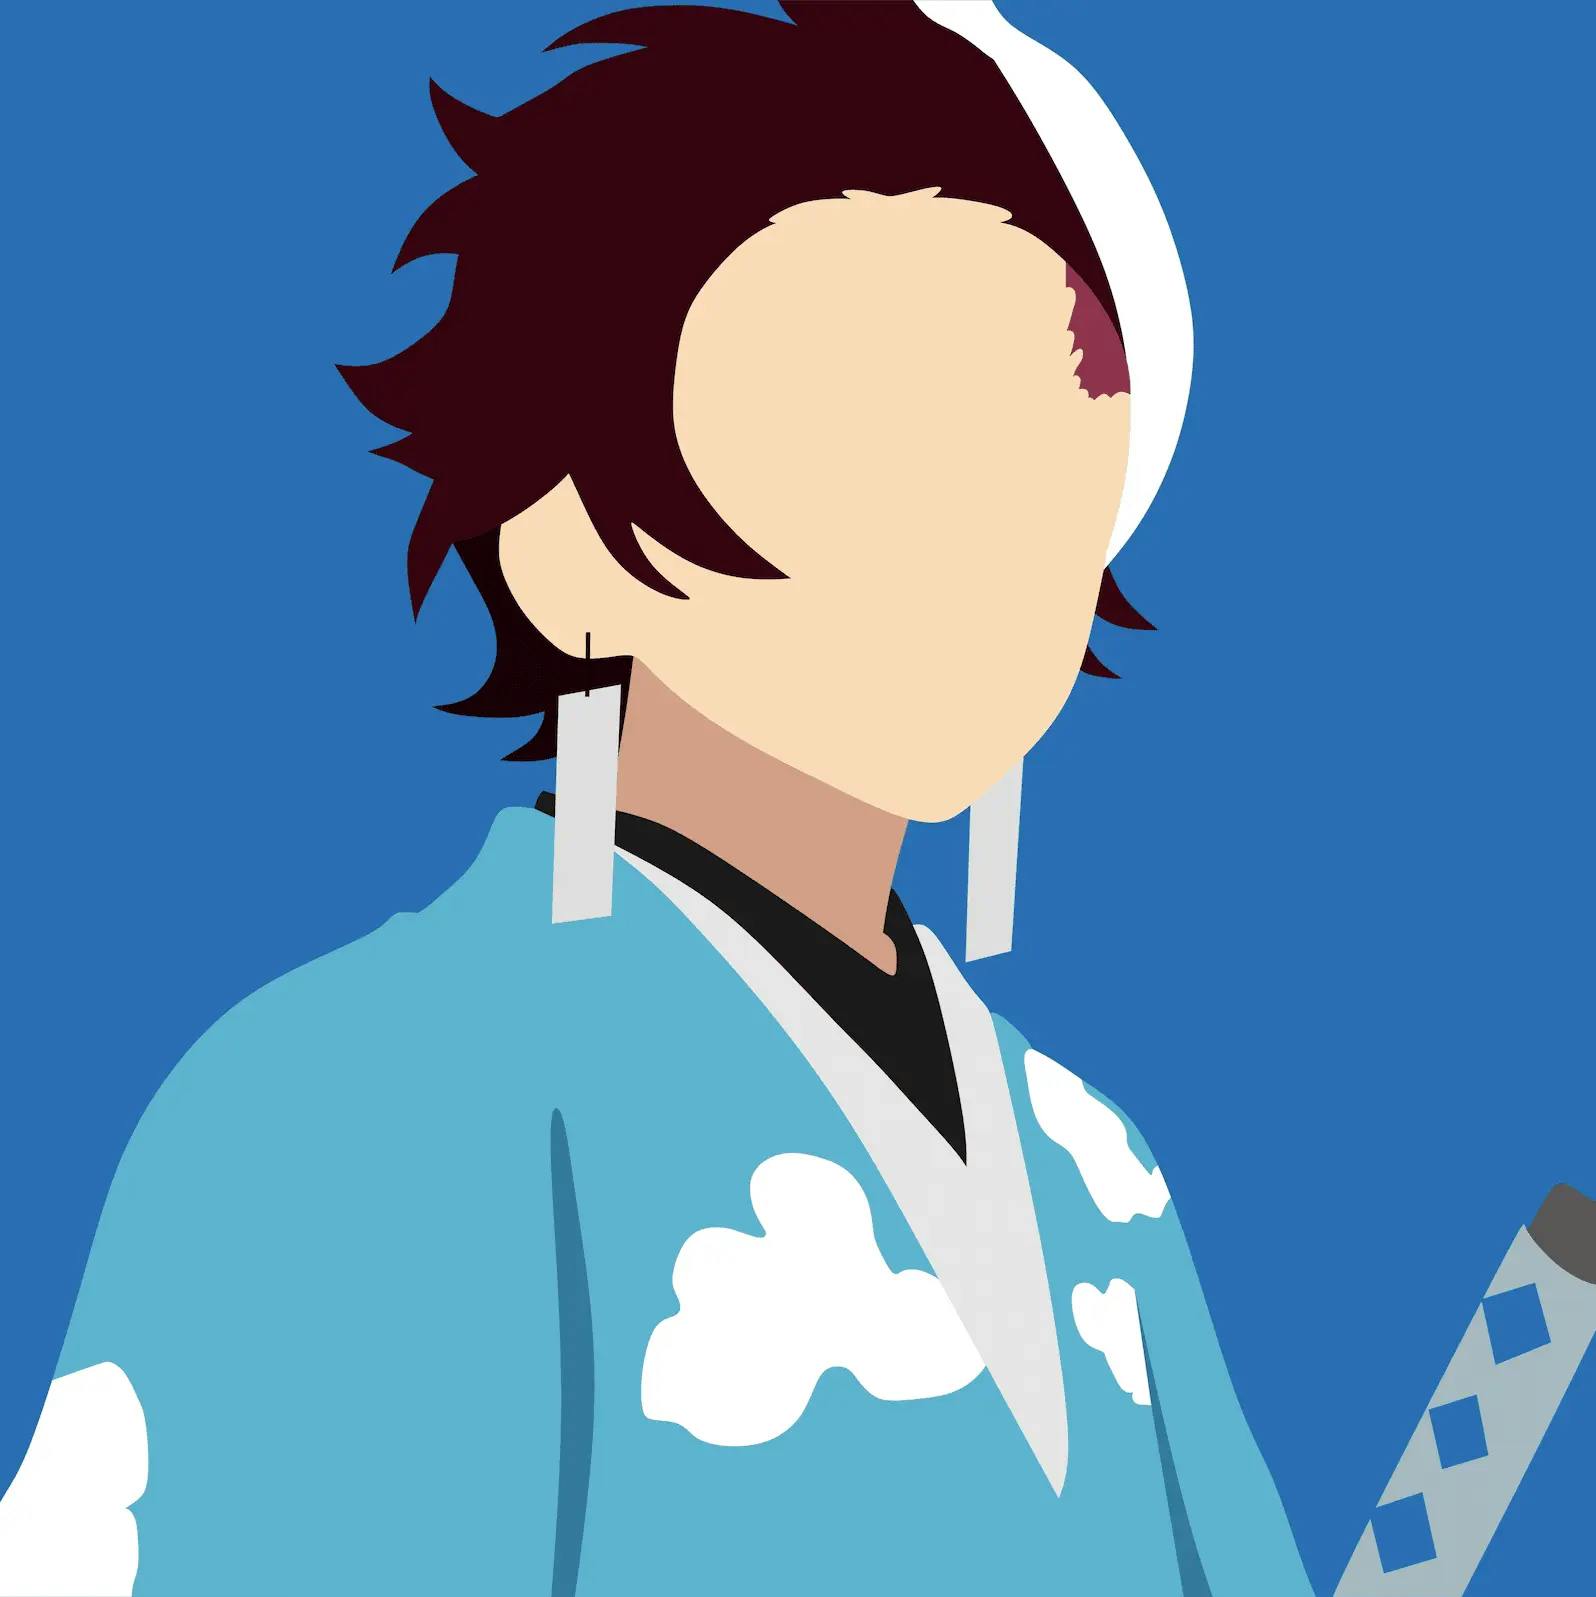 Imagen minimalista del personaje Tanjiro Kamado del anime Kimetsu No Yaiba.